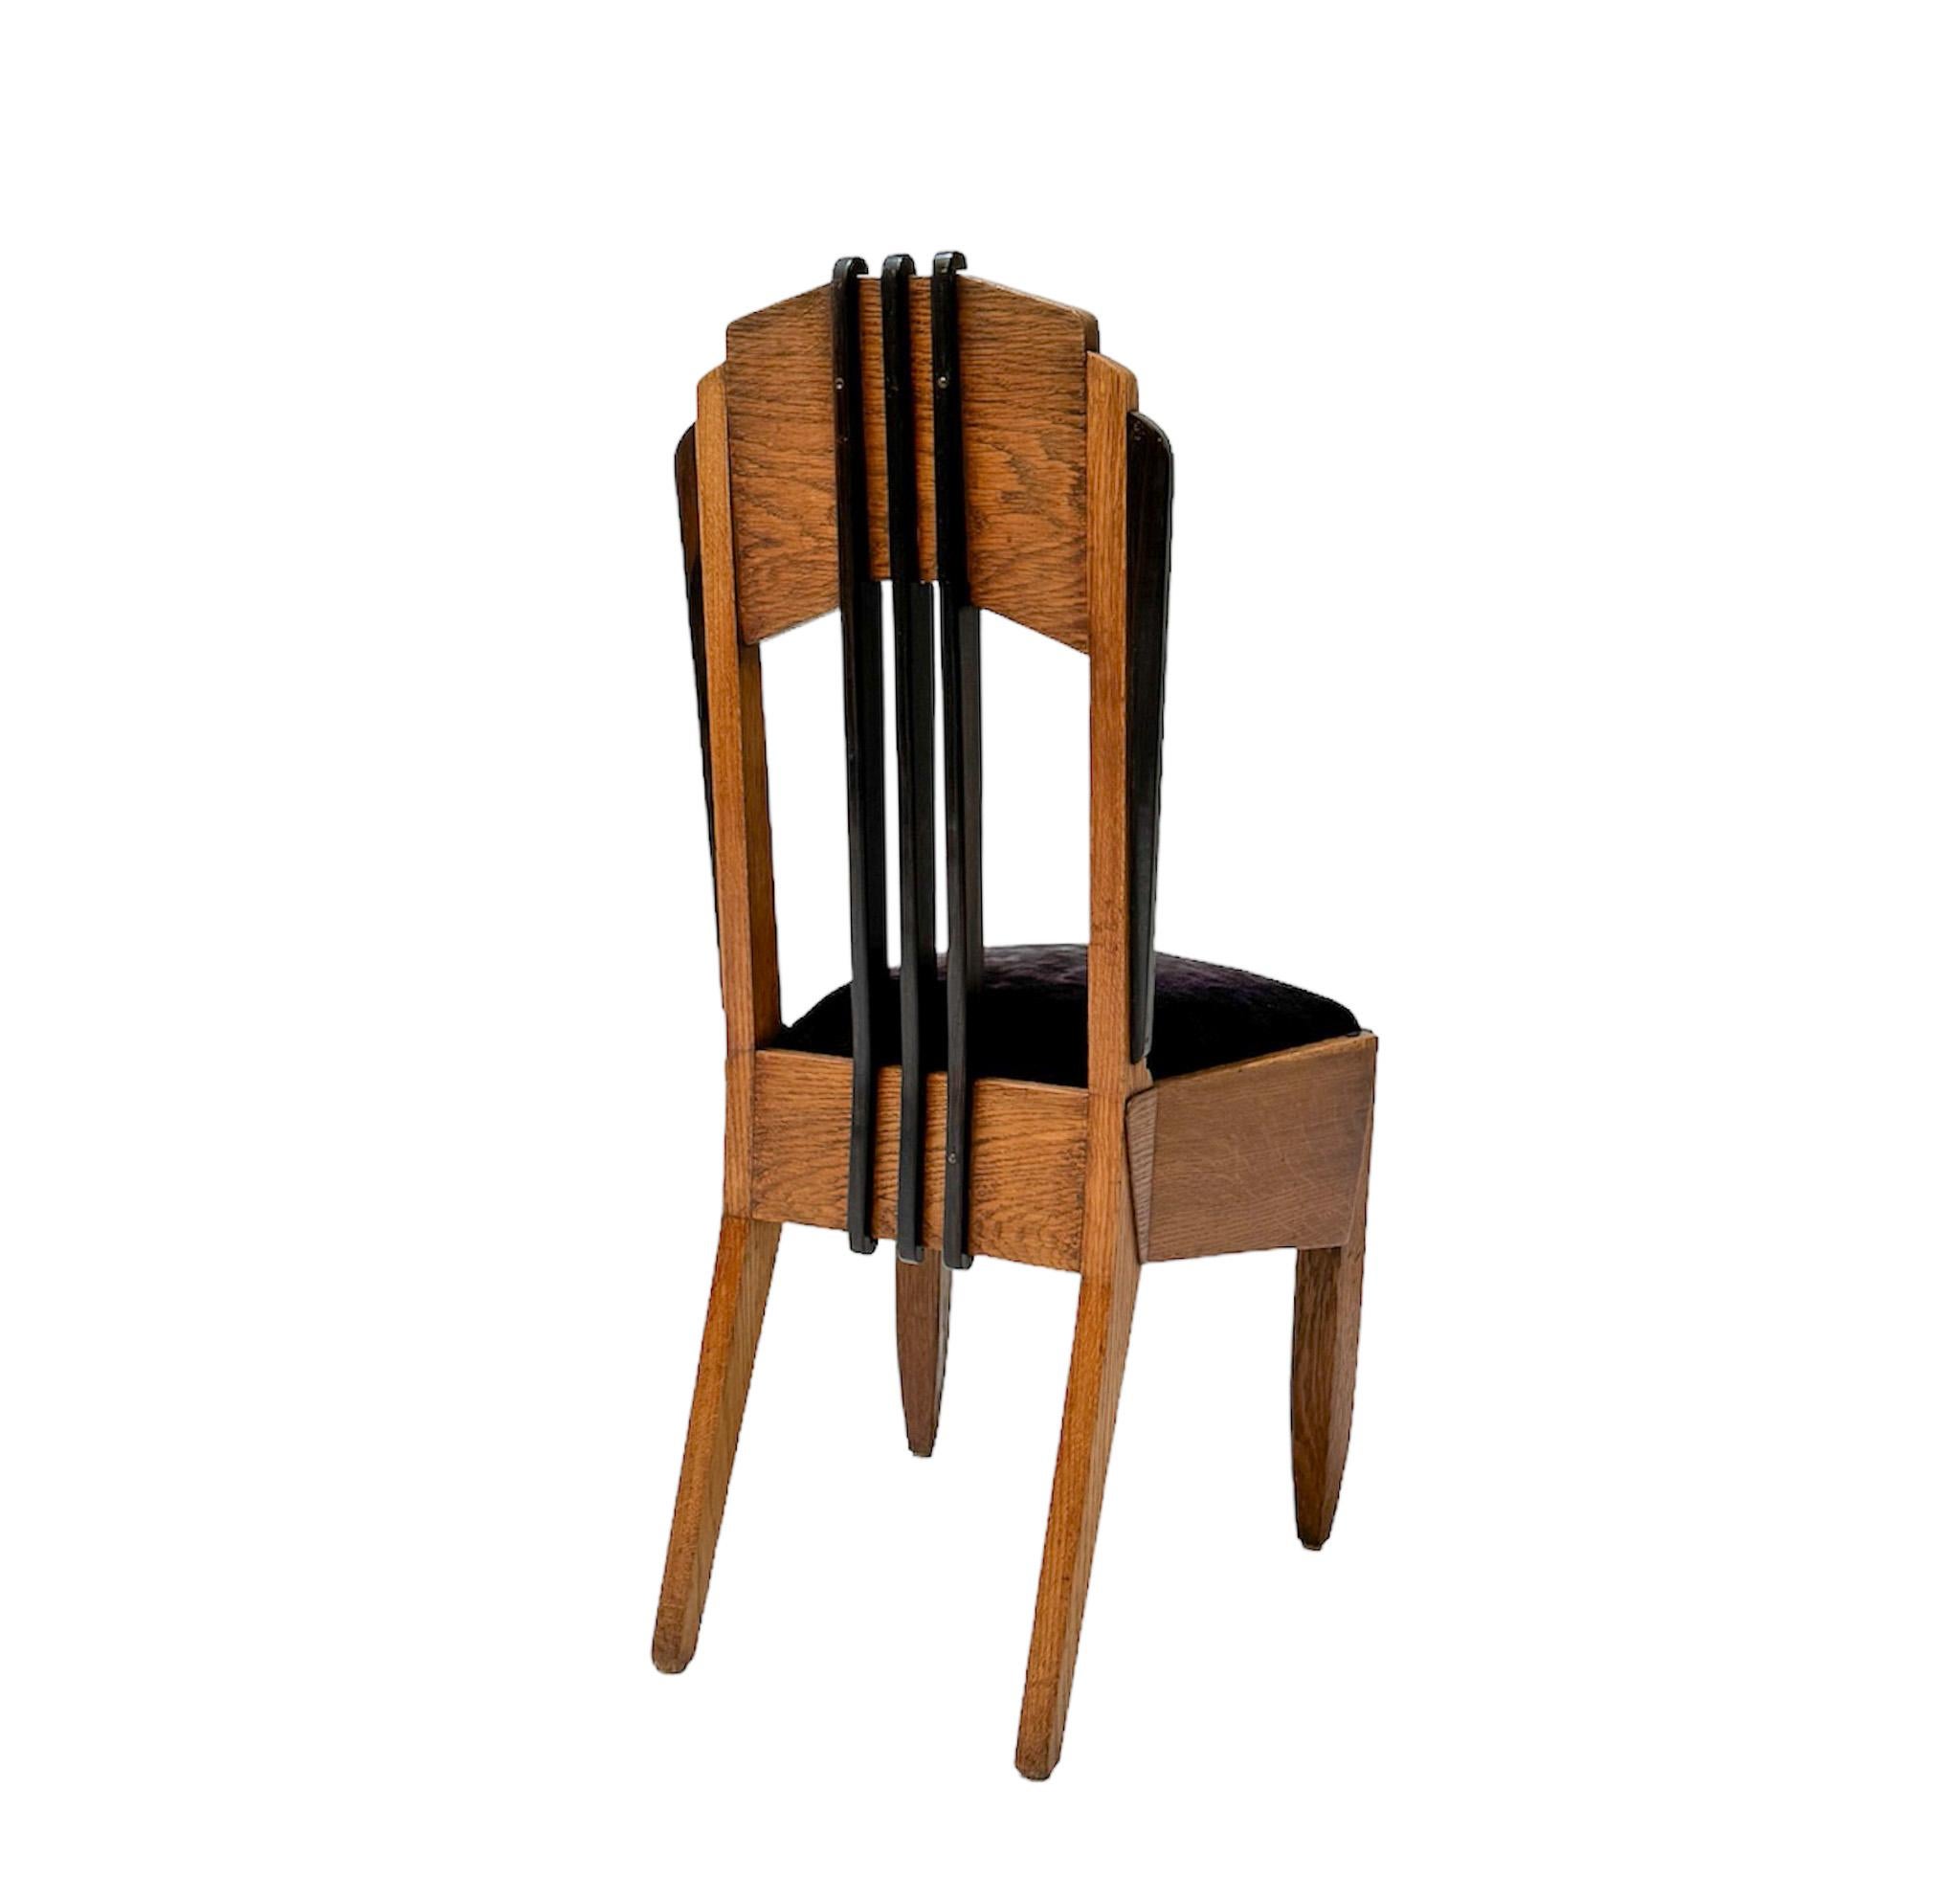 Oak Art Deco Amsterdamse School Side Chair by Hildo Krop, 1920s For Sale 1